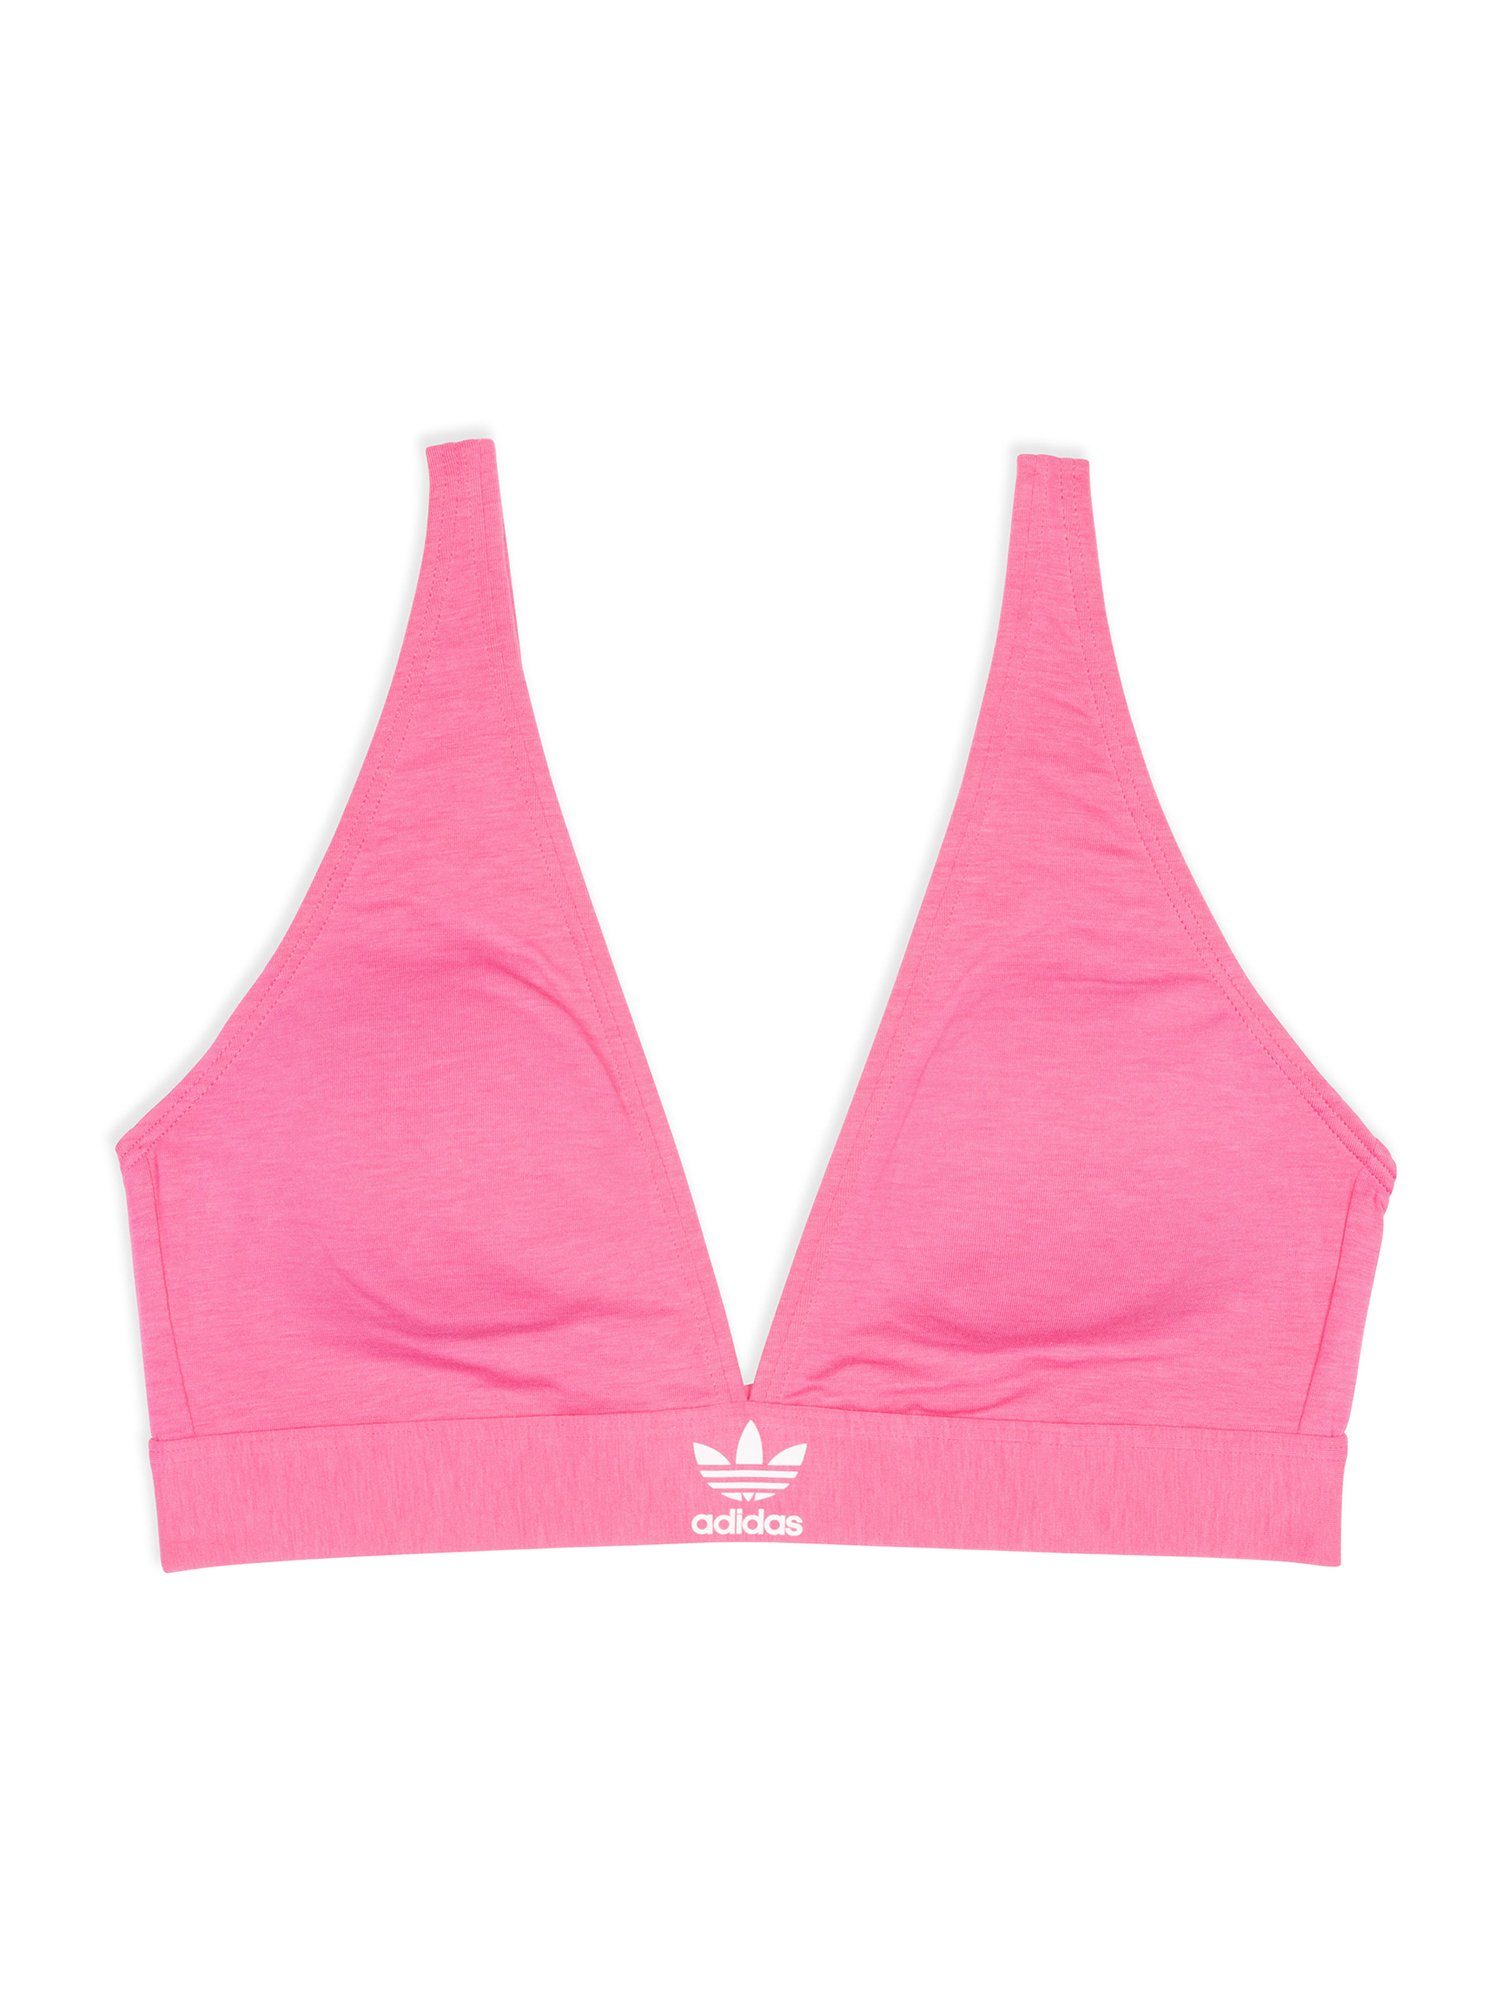 bra pink bustier Originals Triangel-BH lucid Unlined adidas bralette